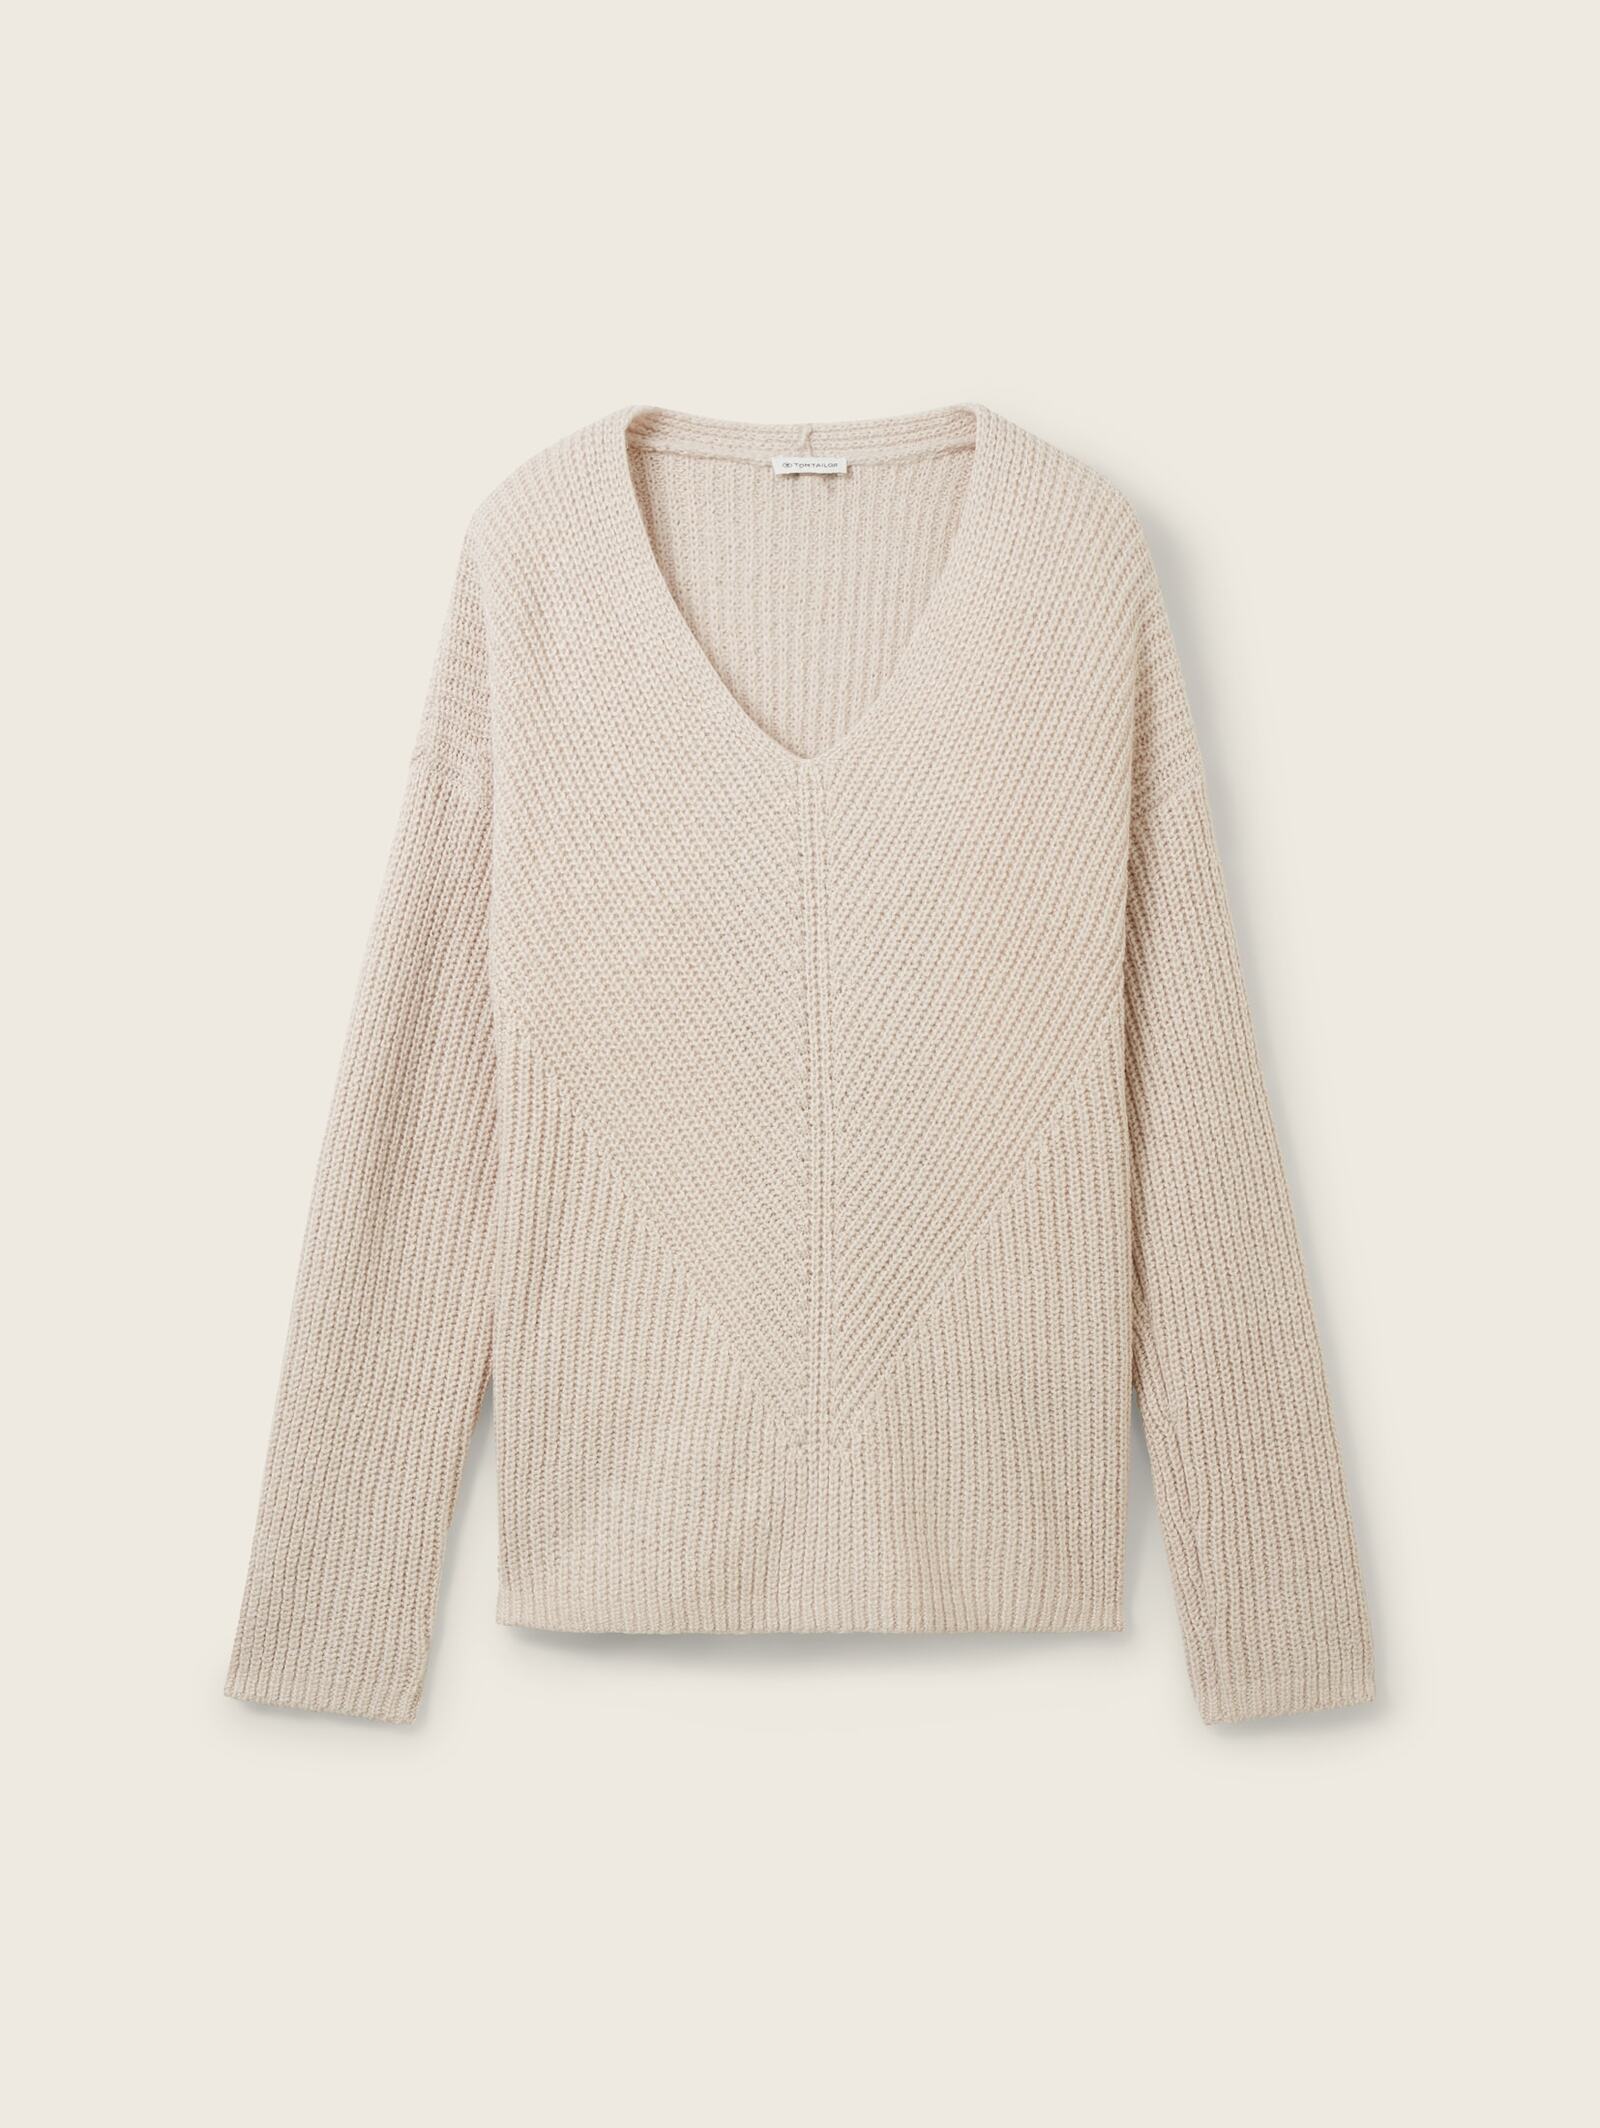 Tom Tailor V Neck Knitted Sweater Clouds Grey Melange - 1039242-32398 Size L